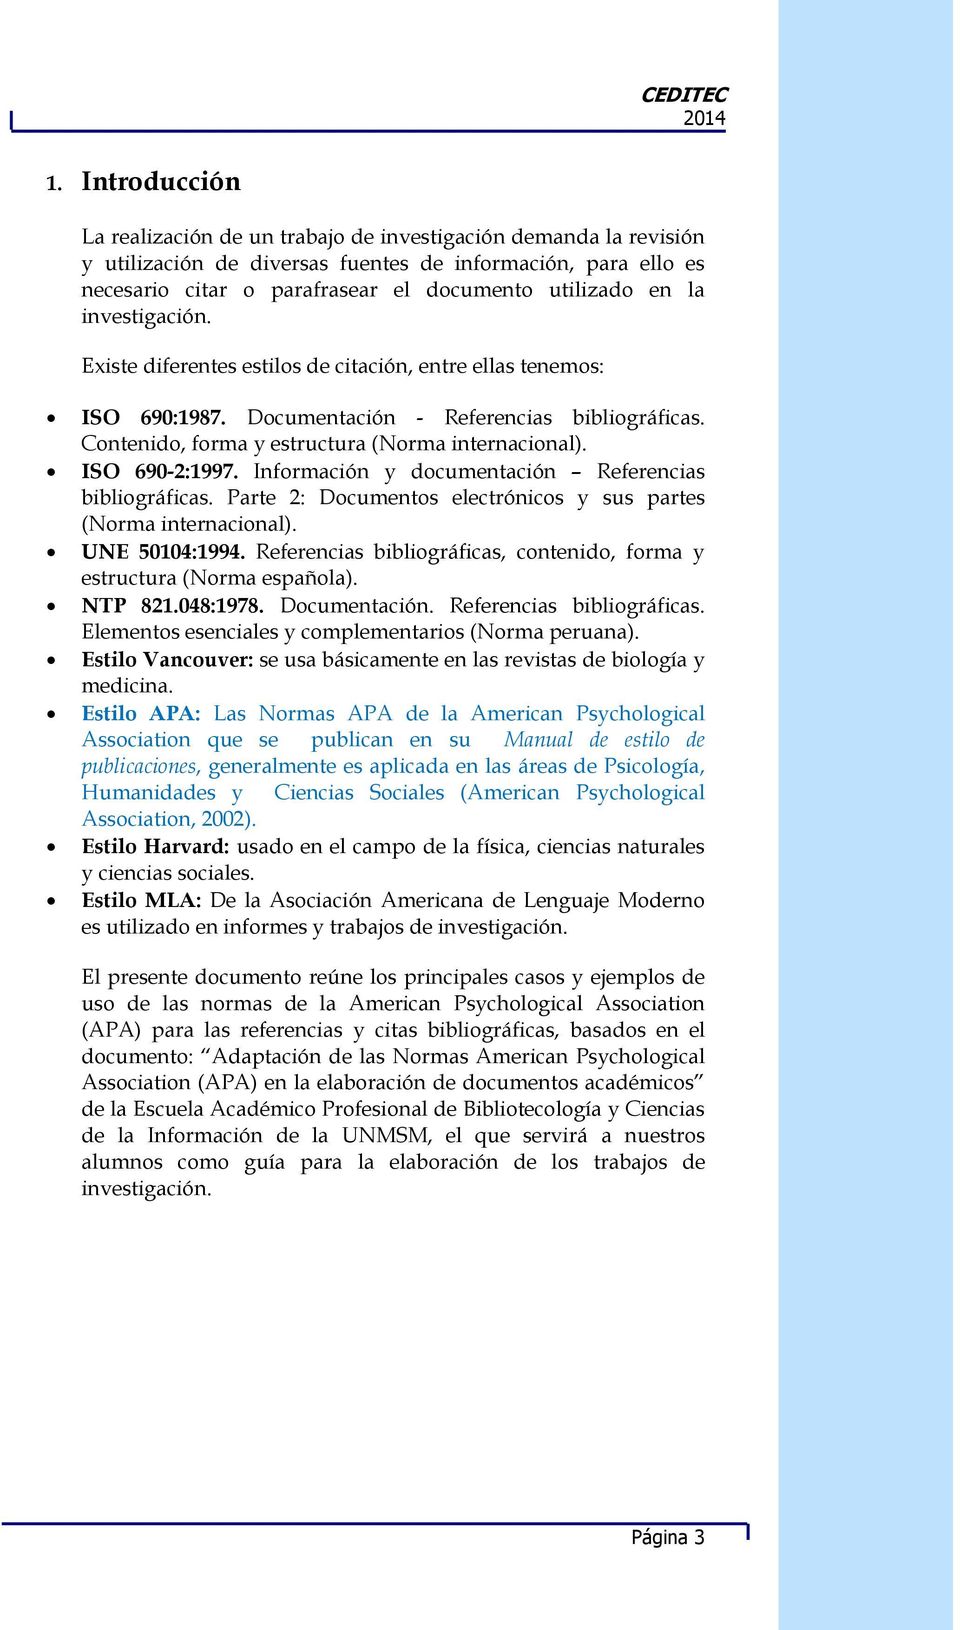 ISO 690-2:1997. Información y documentación Referencias bibliográficas. Parte 2: Documentos electrónicos y sus partes (Norma internacional). UNE 50104:1994.